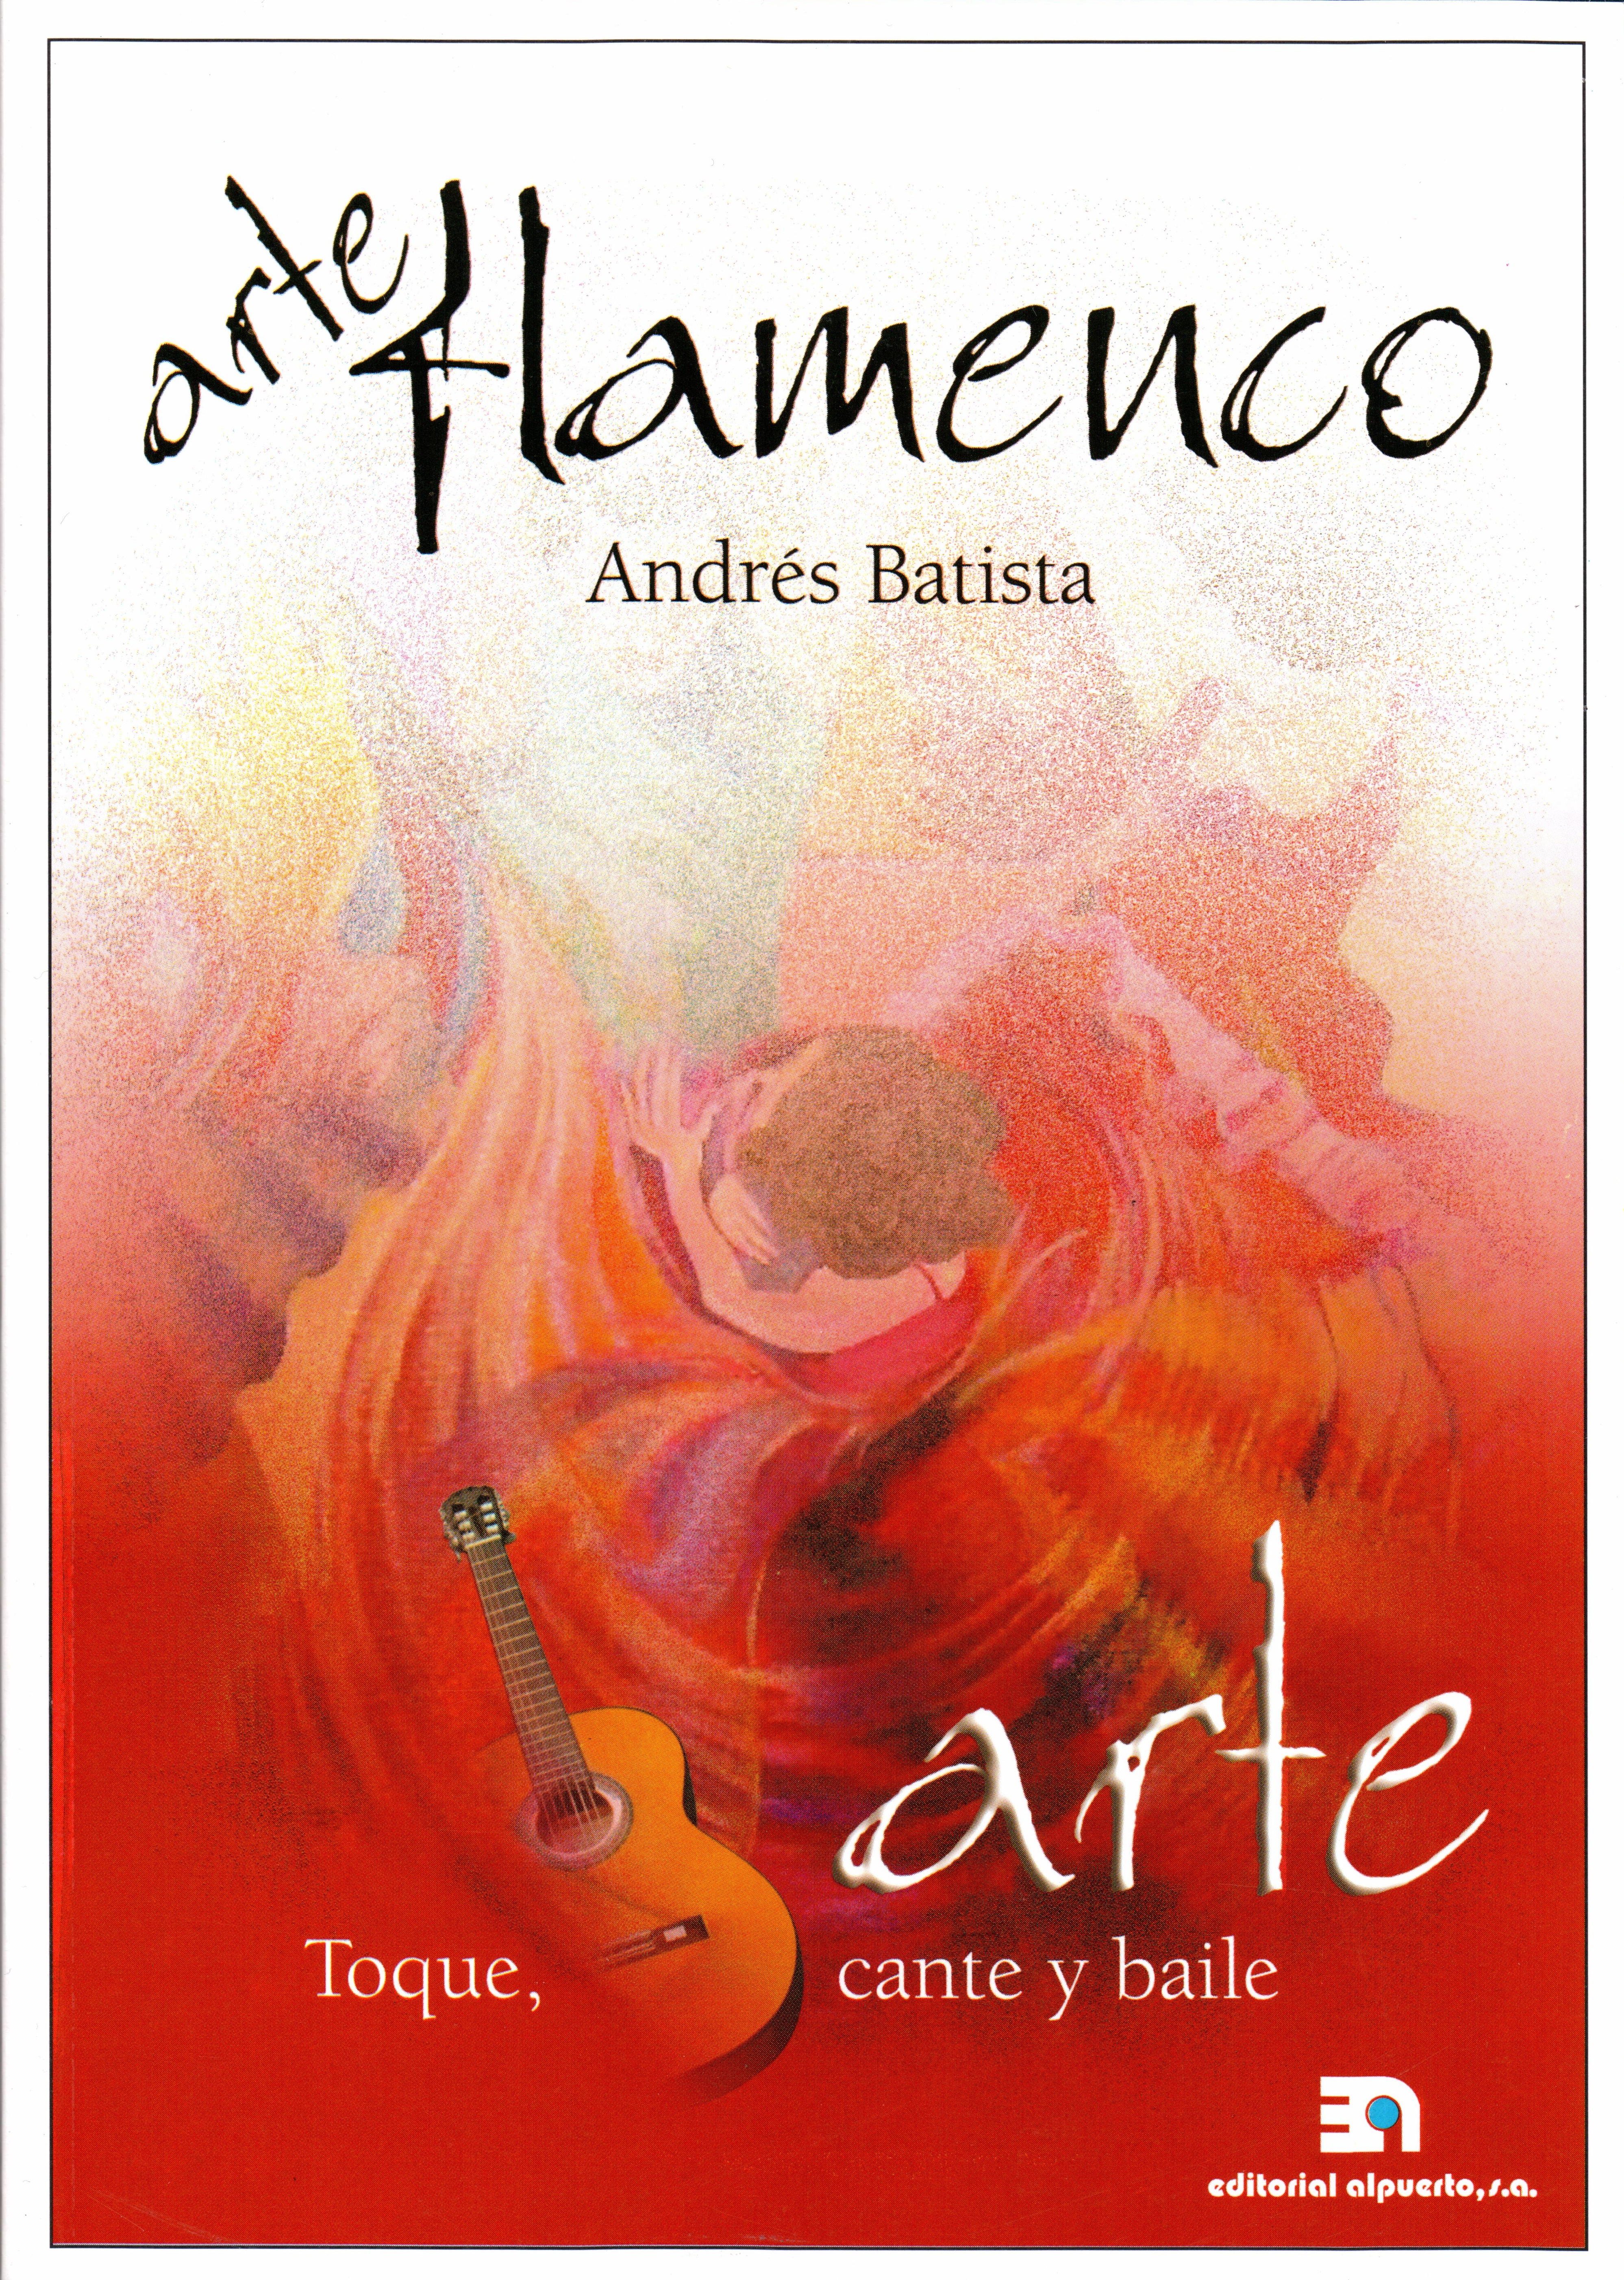 Arte flamenco